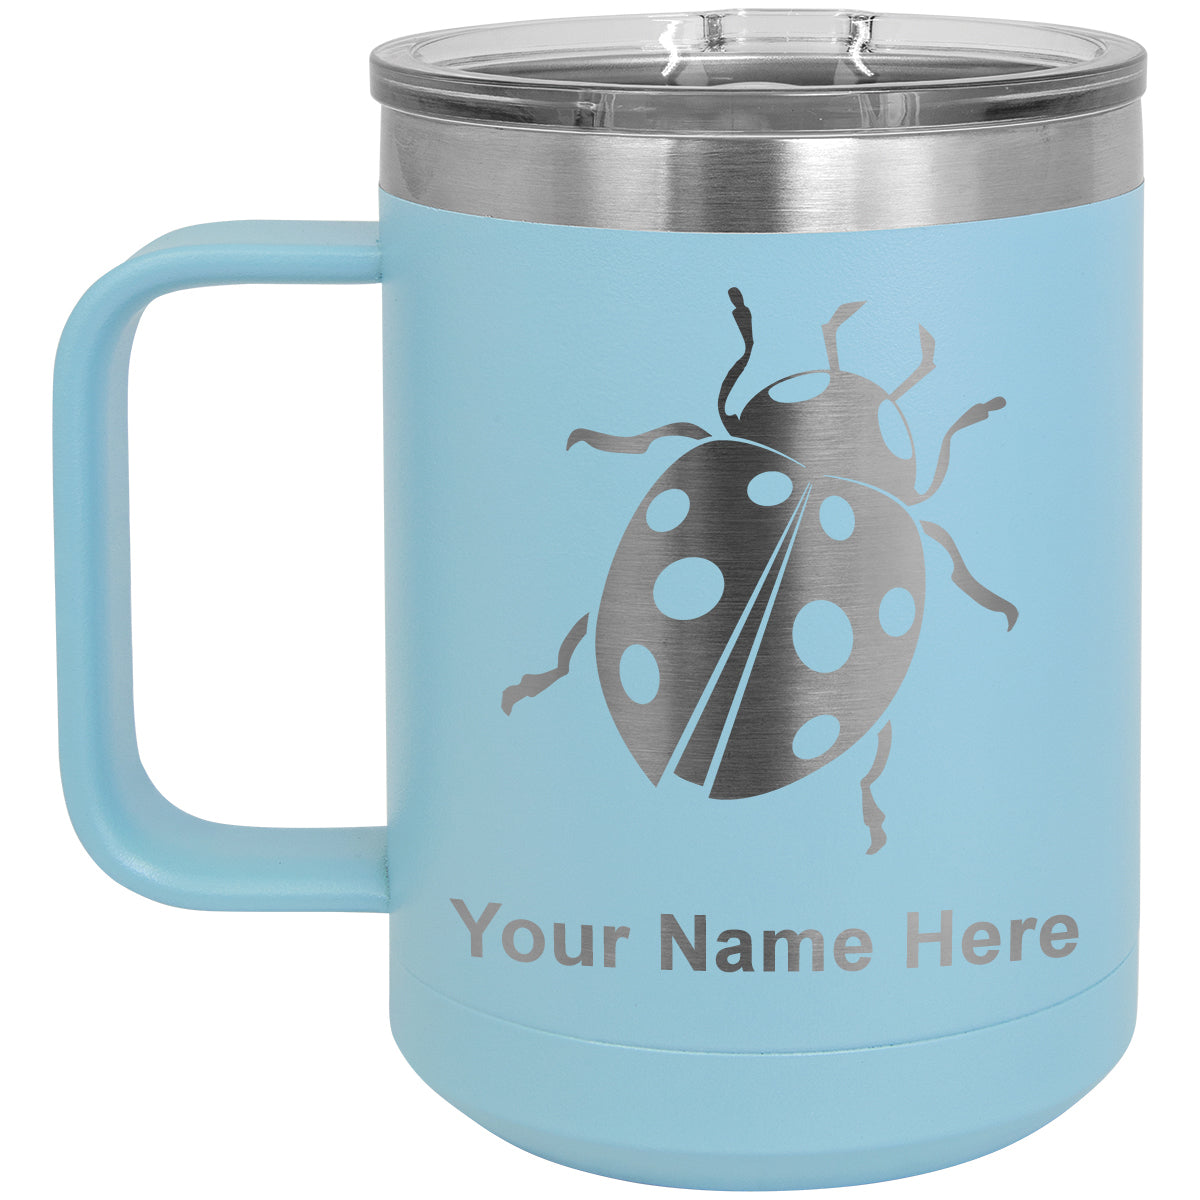 15oz Vacuum Insulated Coffee Mug, Ladybug, Personalized Engraving Included